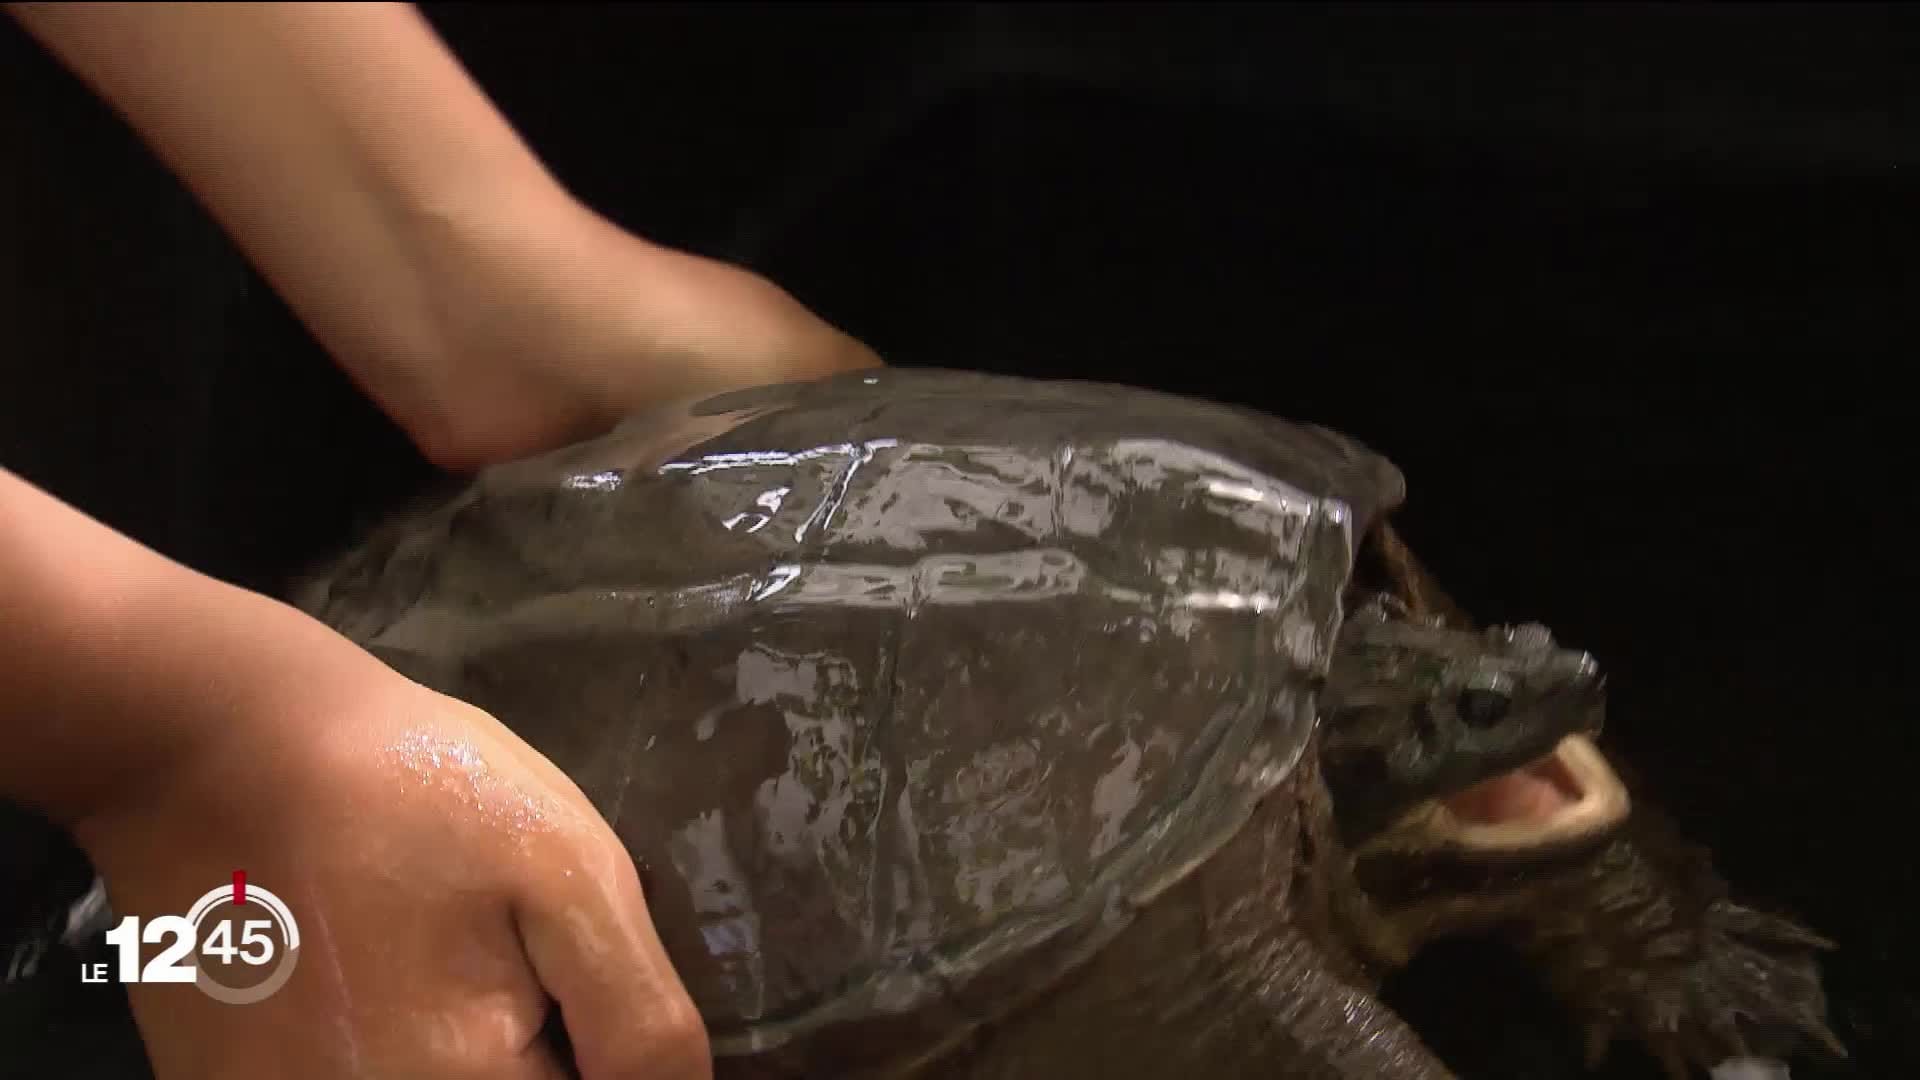 Une deuxième tortue hargneuse découverte dans le canton de Vaud -  -  Vaud